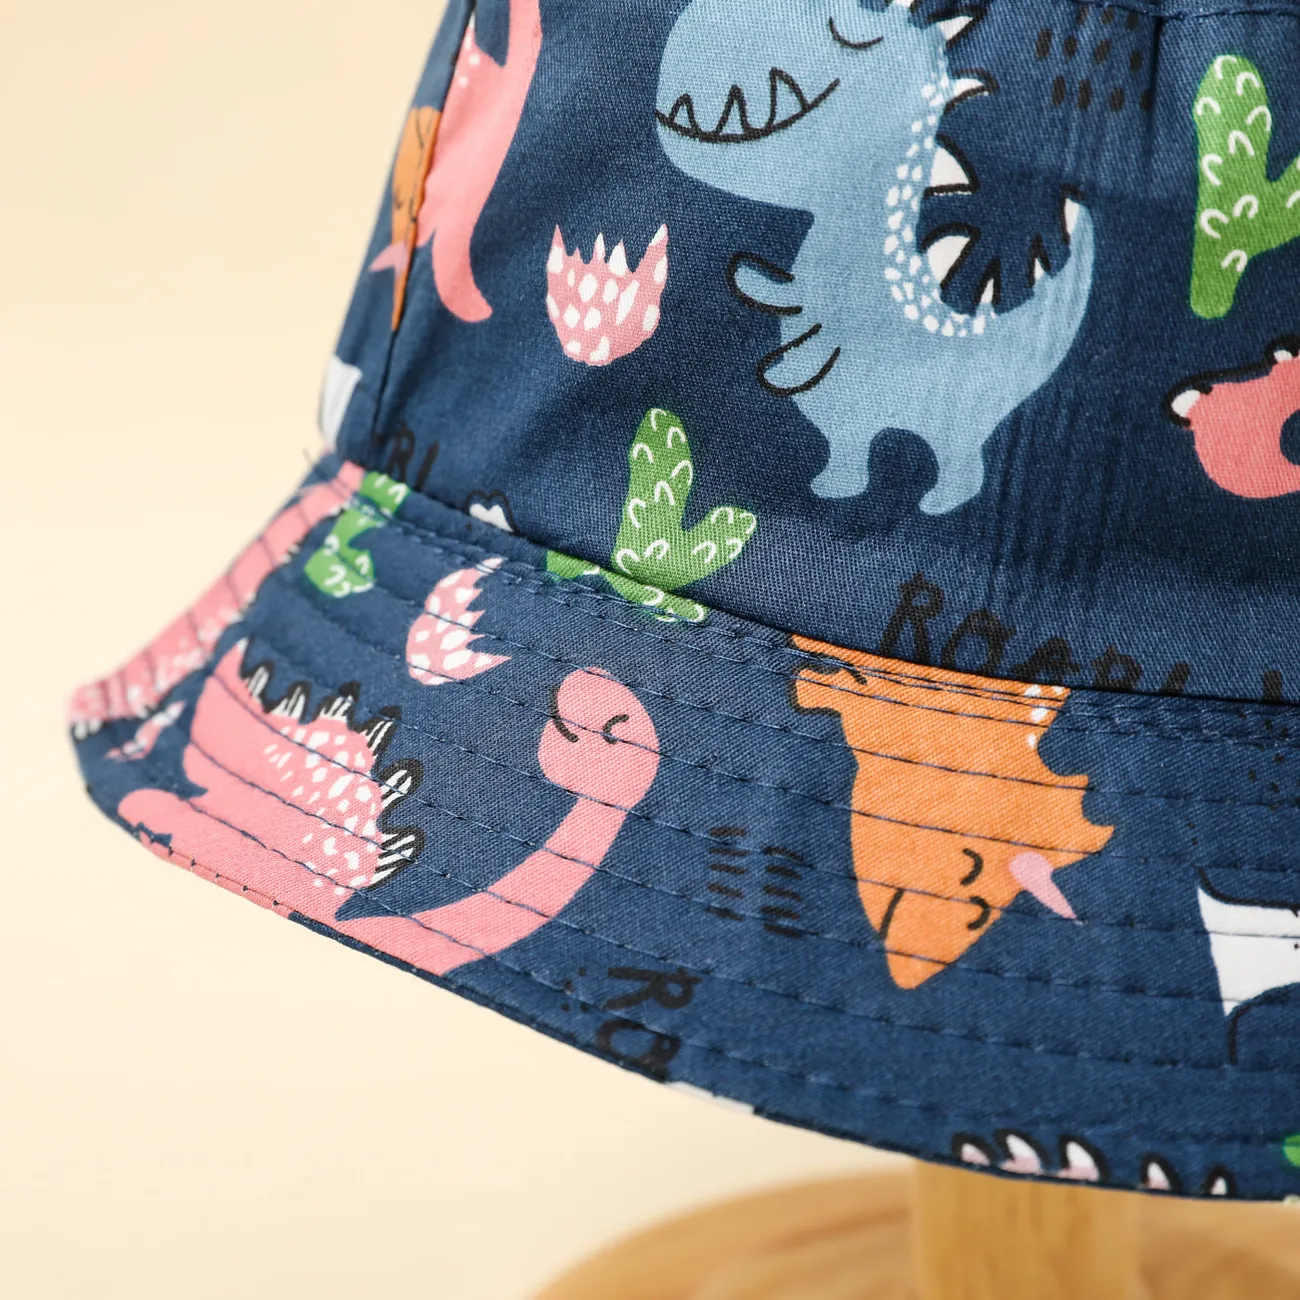 Bebé / Niño pequeño Allover Dinosaur Print Bucket Hat Azul oscuro big image 1